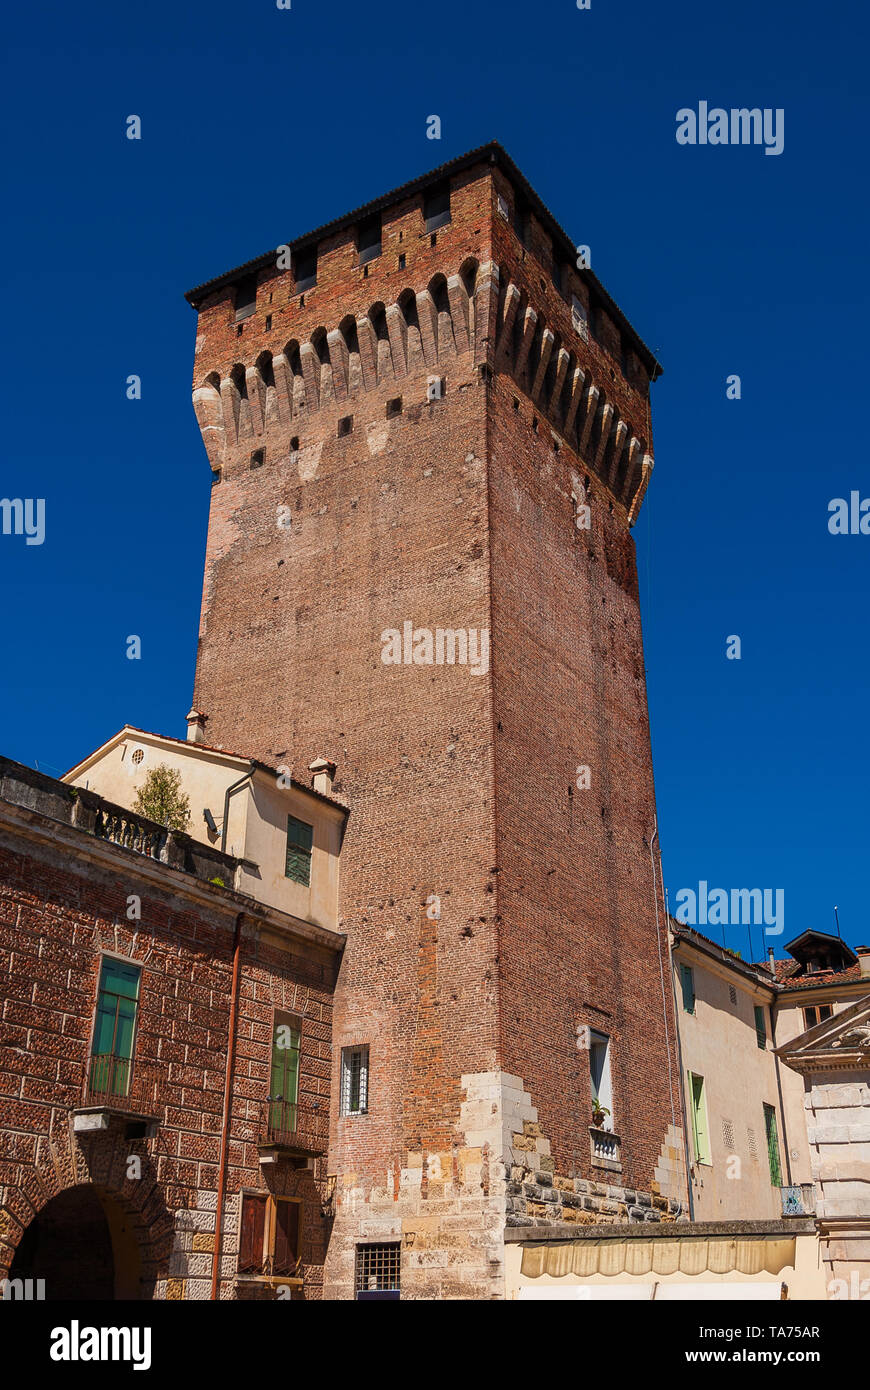 Porta Castello Tower. Eine beeindruckende mittelalterliche Turm über Vicenza Wände Main Gate, der letzte überlebende Teil einer alten Burg aus dem 14. Jahrhundert Stockfoto